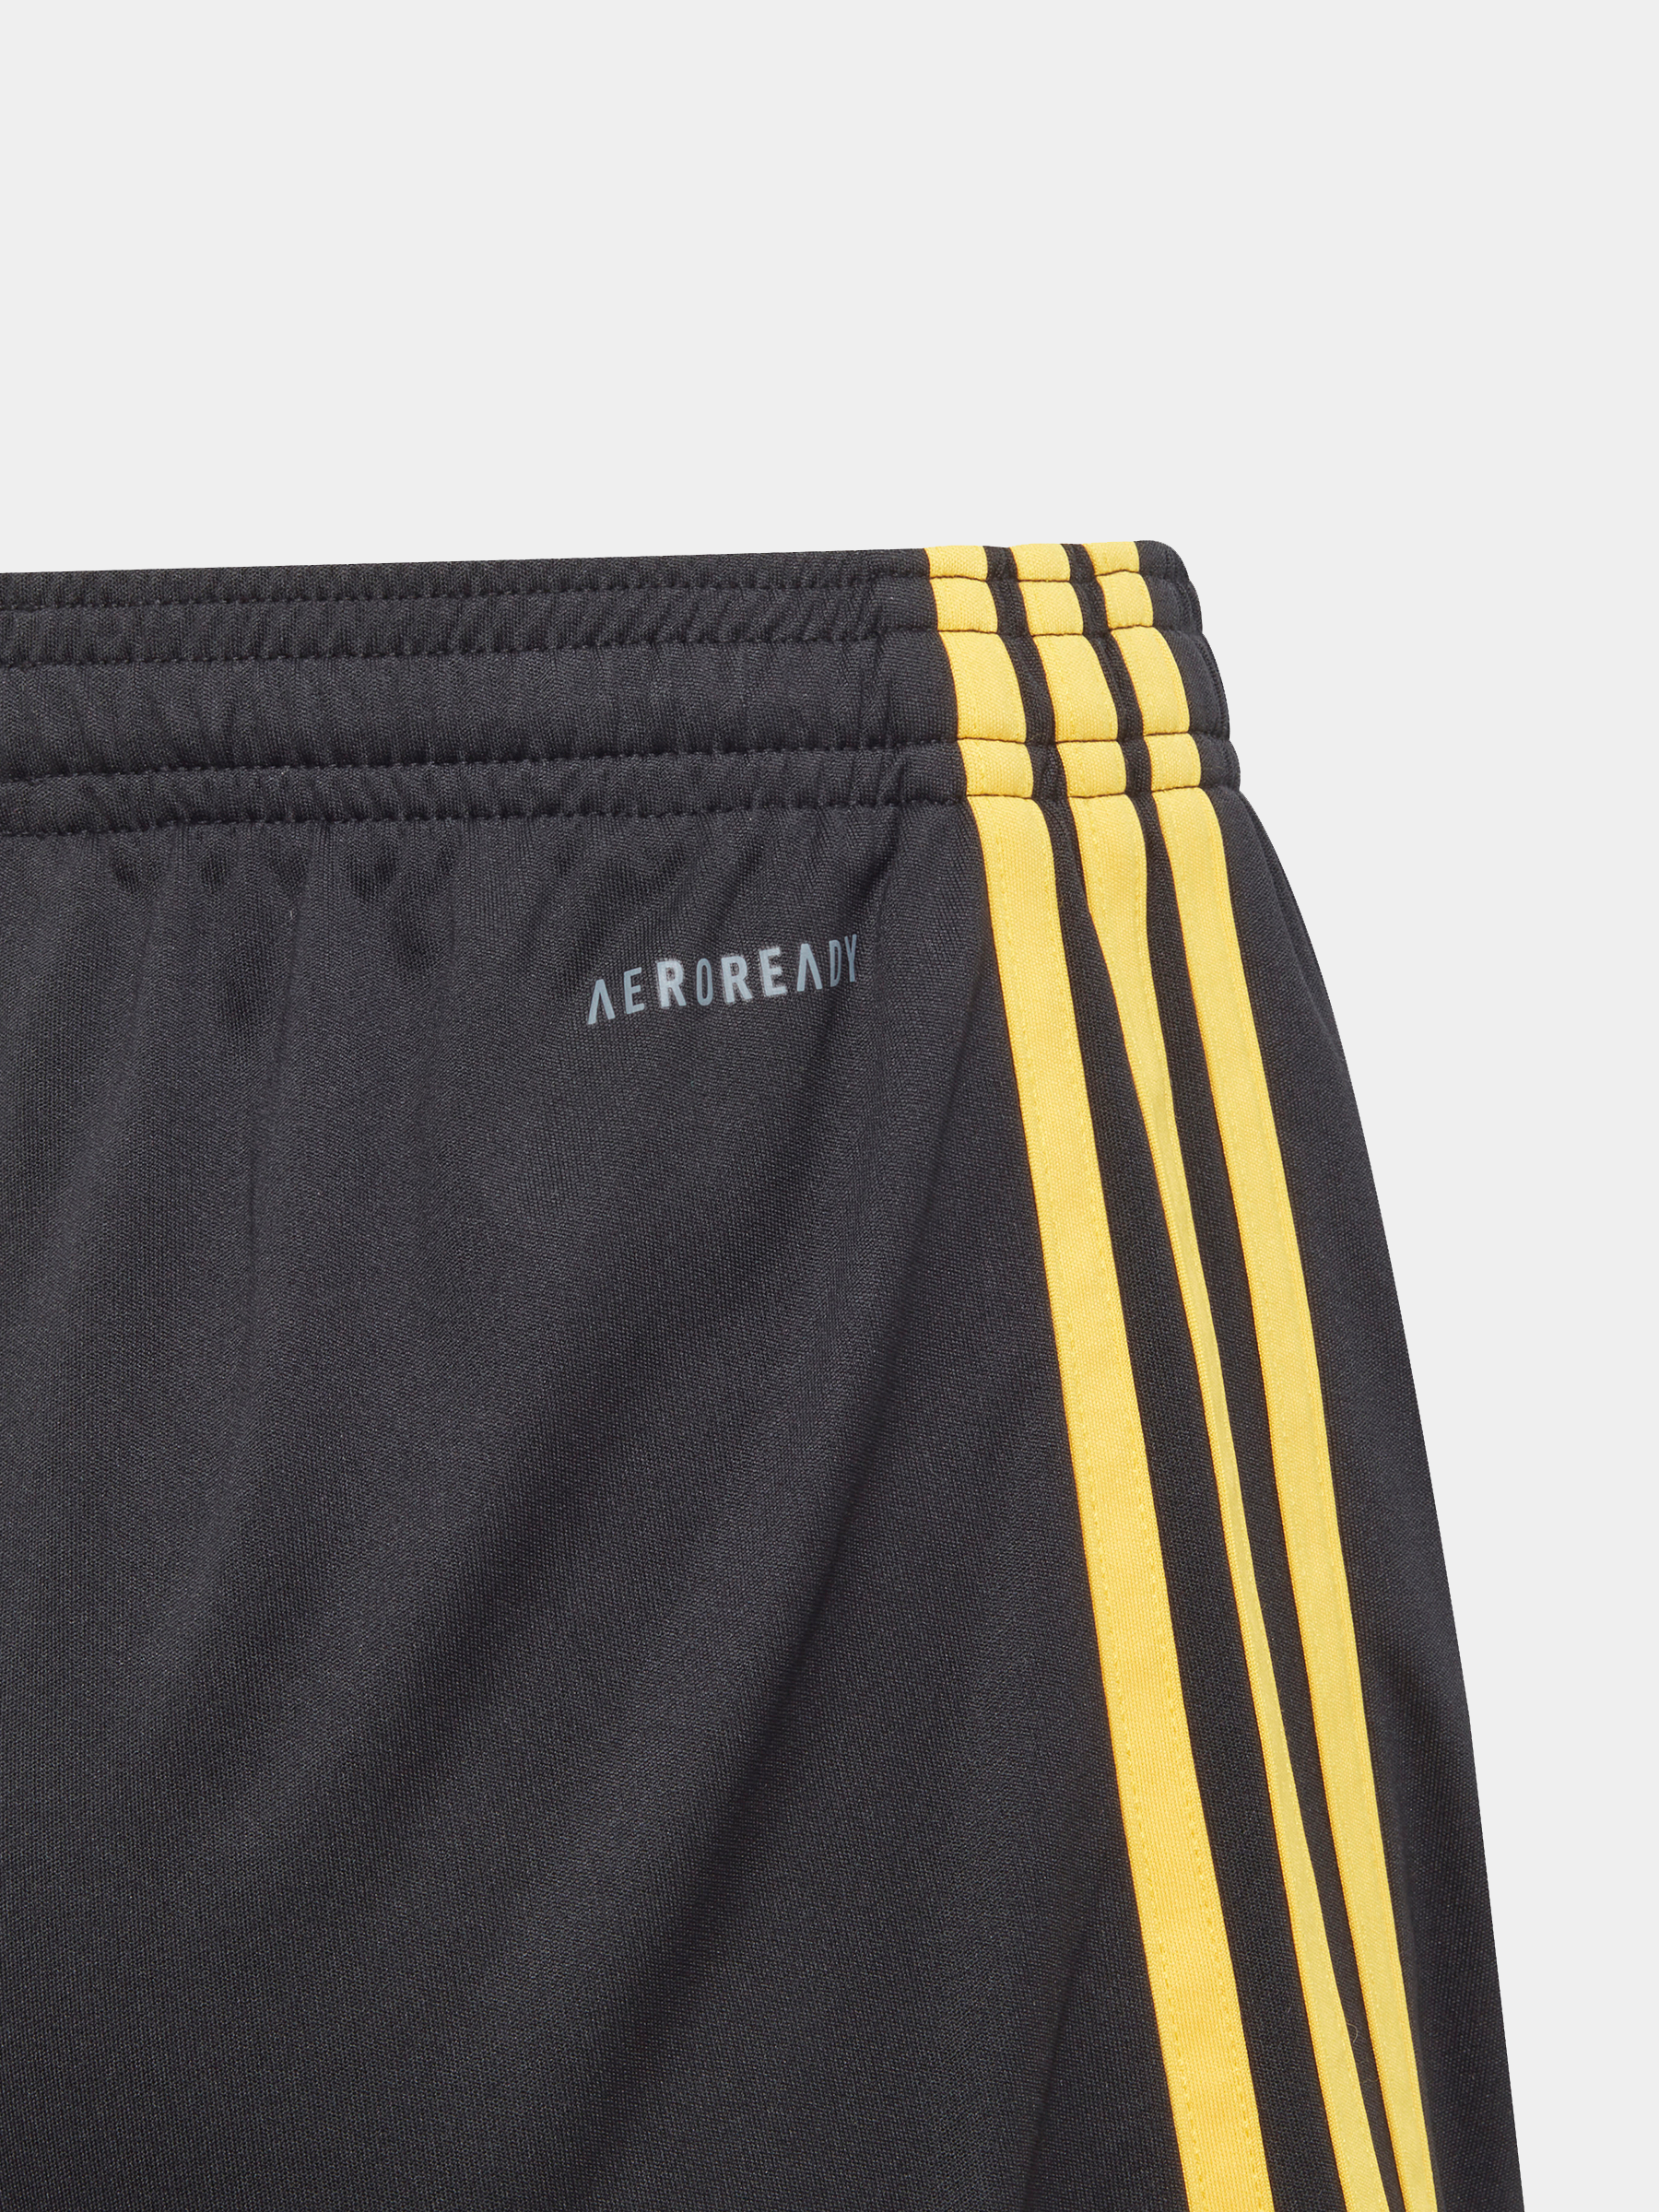 מכנסי כדורגל של קבוצת יובנטוס / ילדים- adidas performance|אדידס פרפורמנס